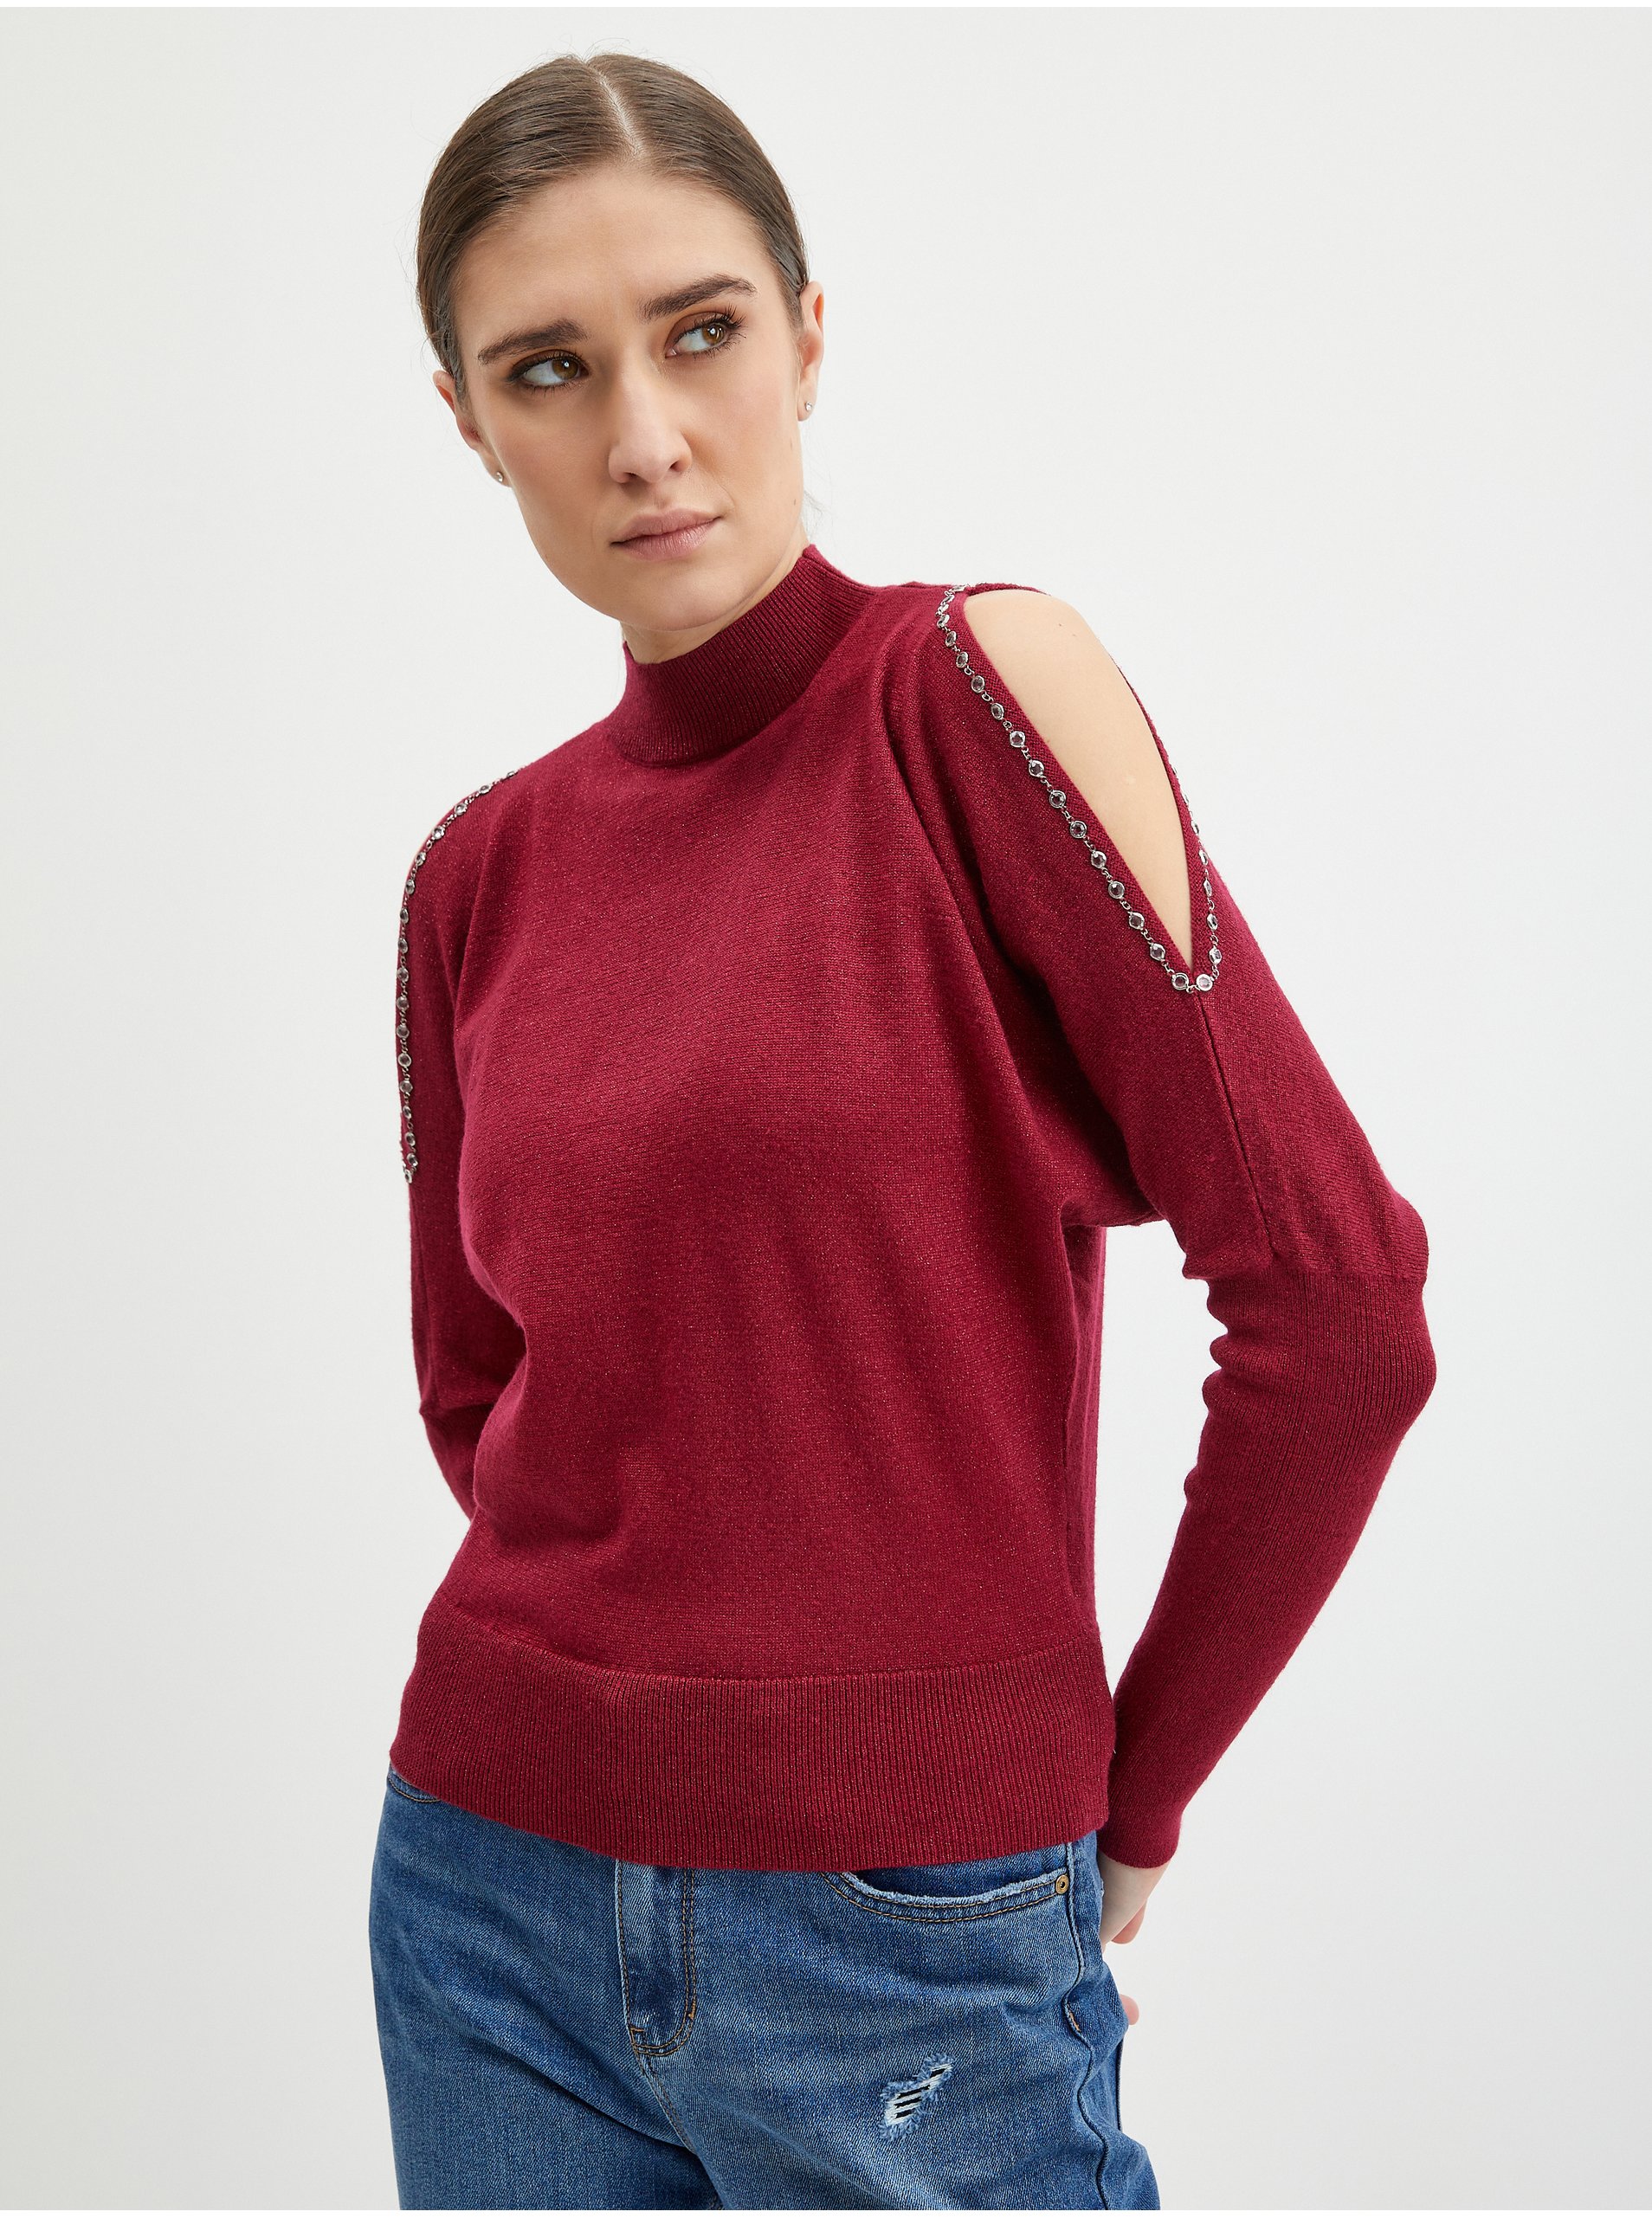 E-shop Vínový dámský svetr s průstřihy ORSAY